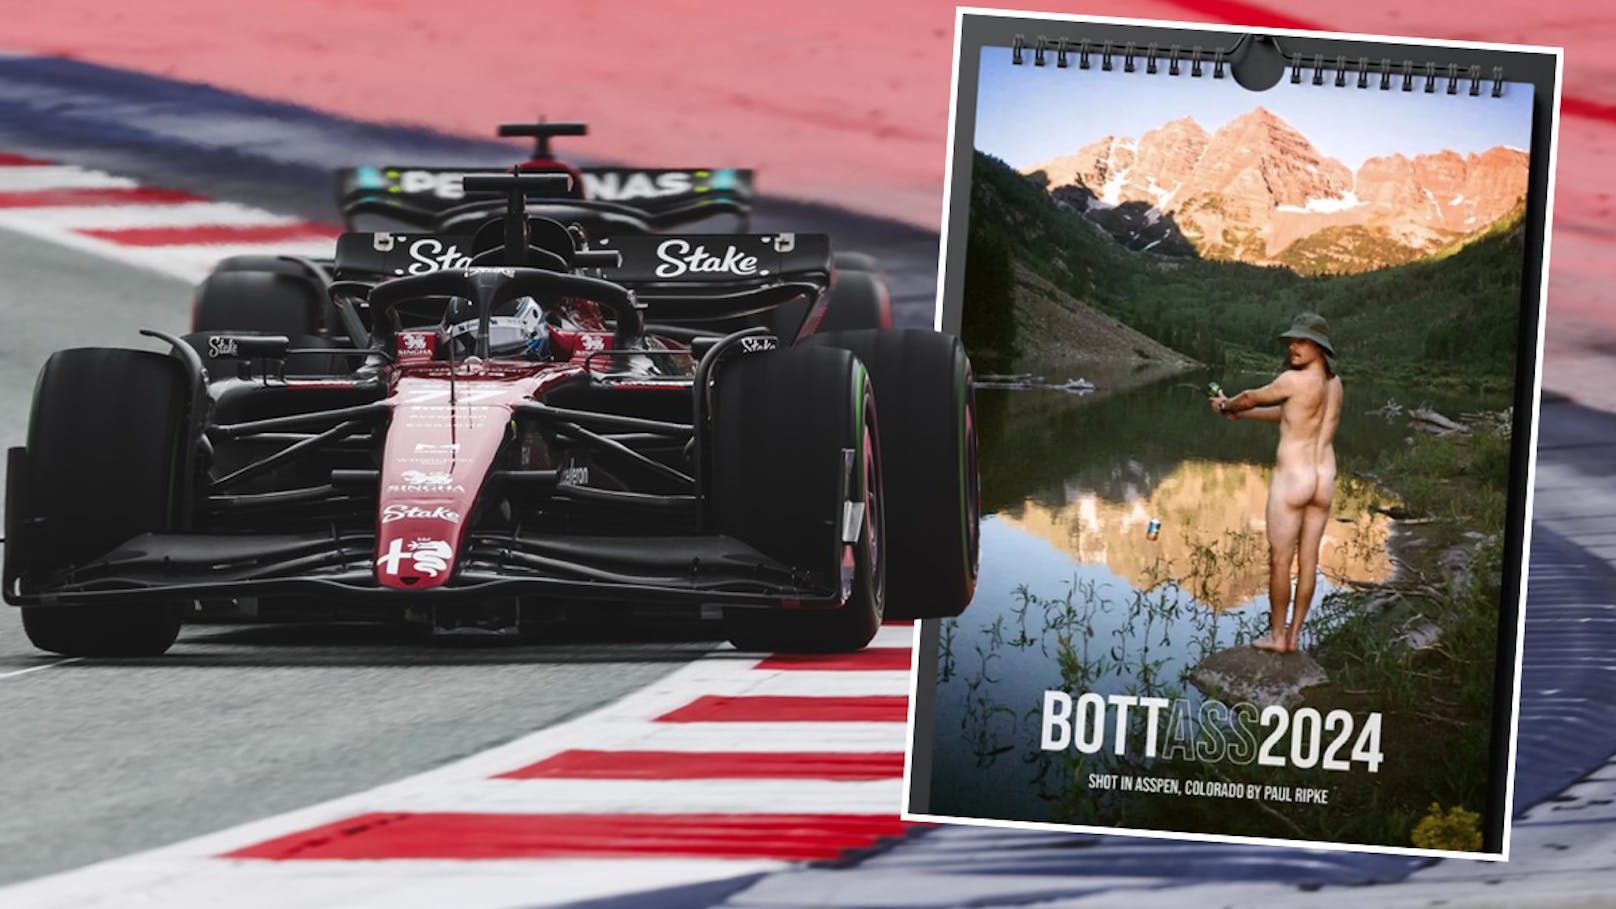 F1 Star pr 228 sentiert eigenen Nackt Kalender Formel 1 Heute at